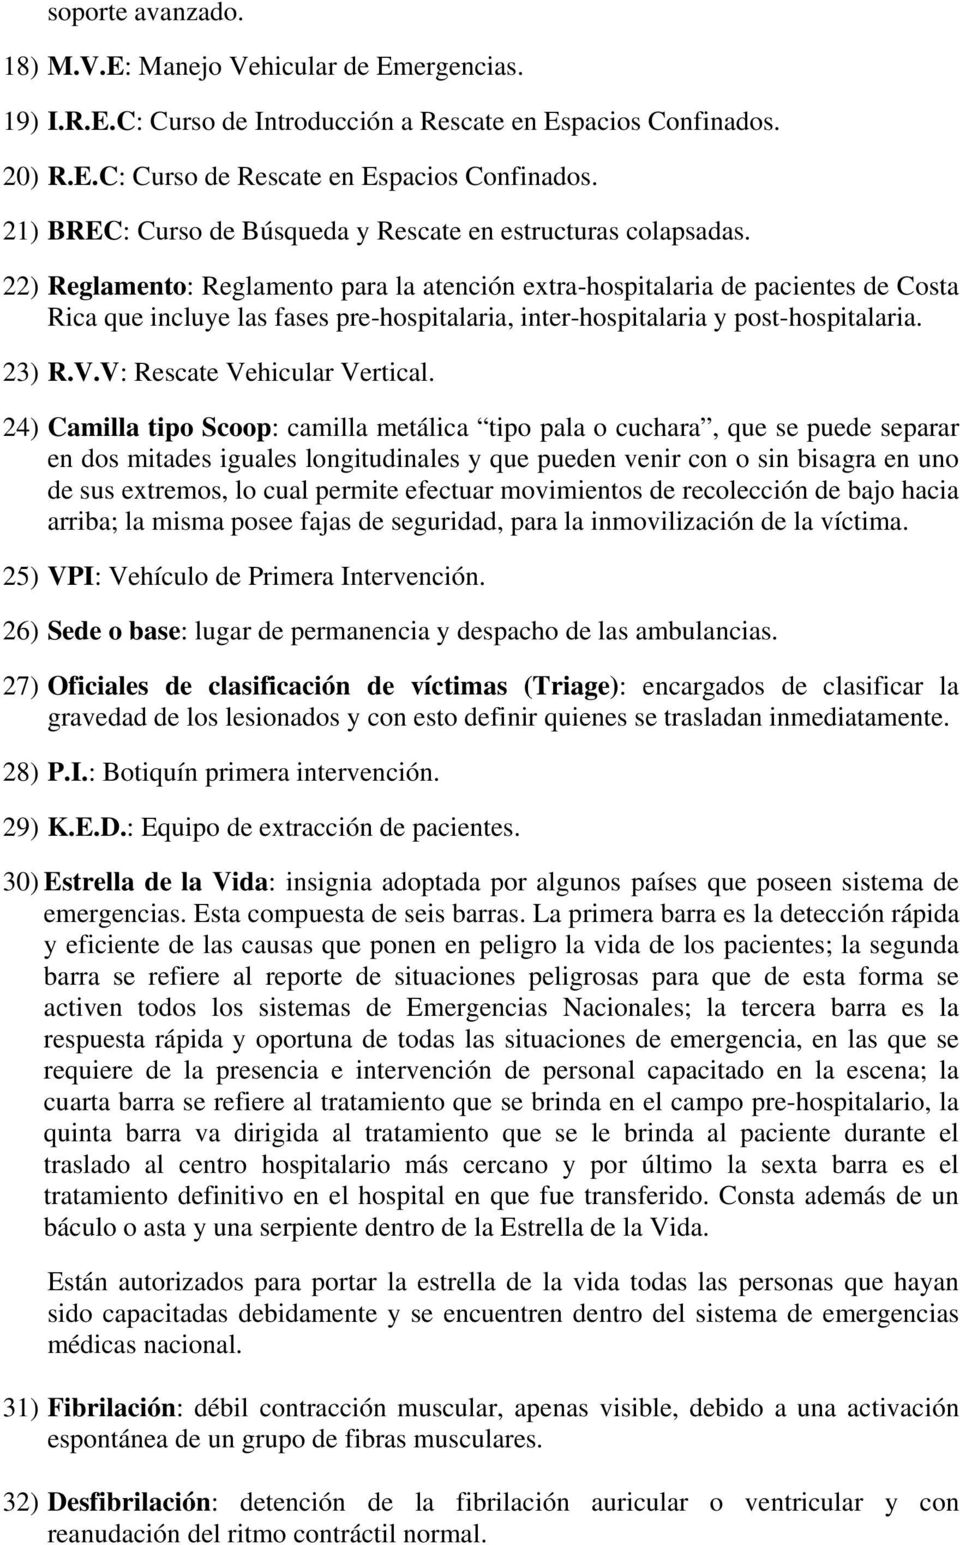 22) Reglamento: Reglamento para la atención extra-hospitalaria de pacientes de Costa Rica que incluye las fases pre-hospitalaria, inter-hospitalaria y post-hospitalaria. 23) R.V.